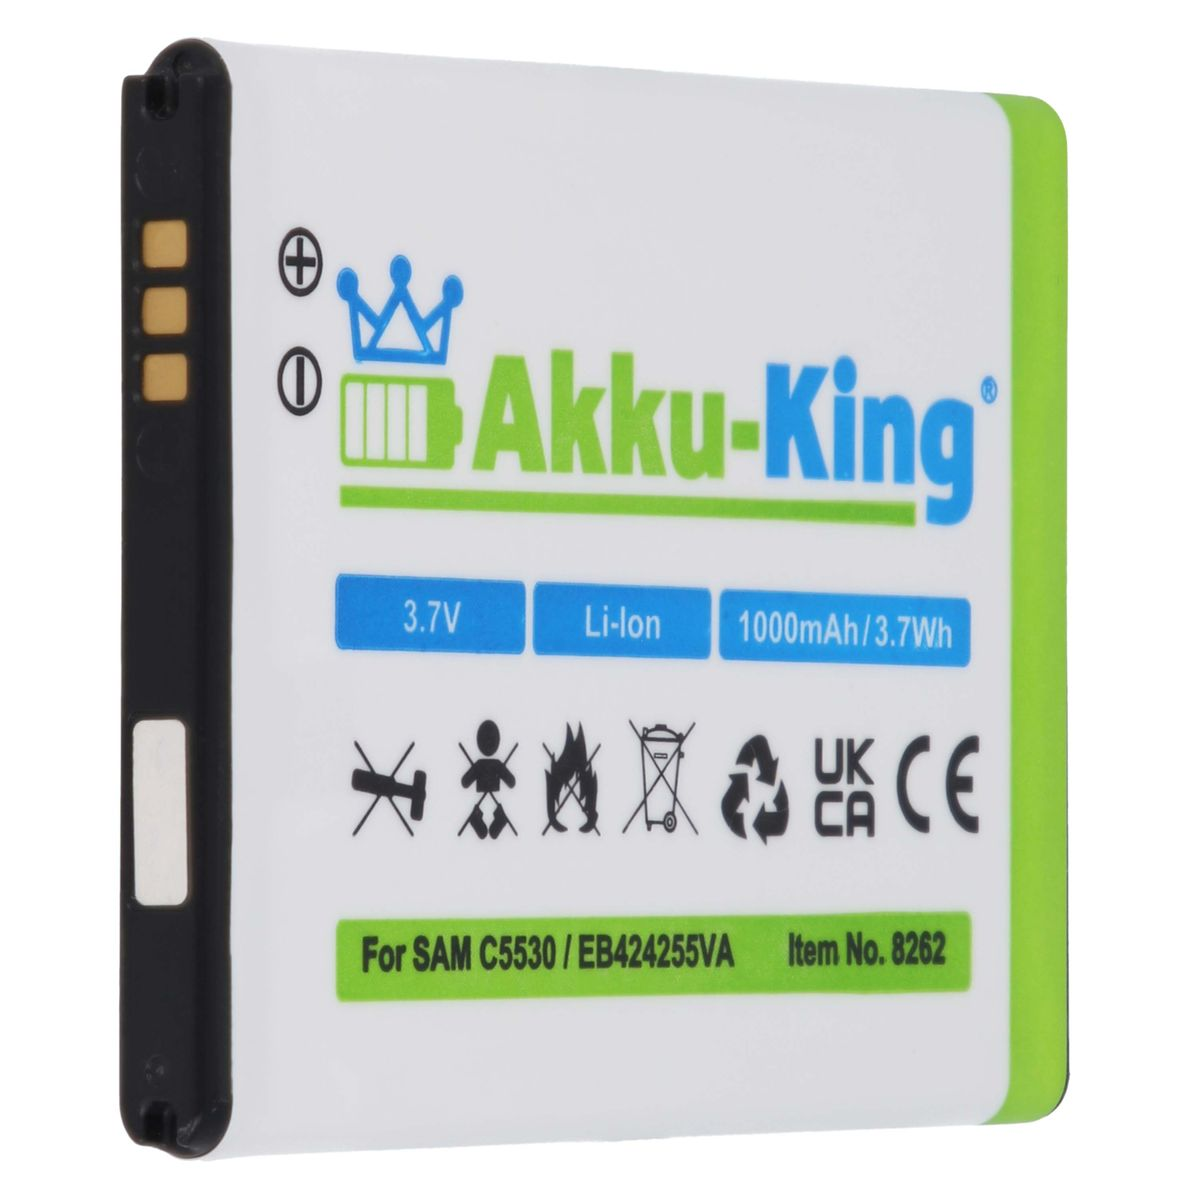 Samsung EB424255VA Akku kompatibel Volt, AKKU-KING Handy-Akku, mit 3.7 Li-Ion 1000mAh